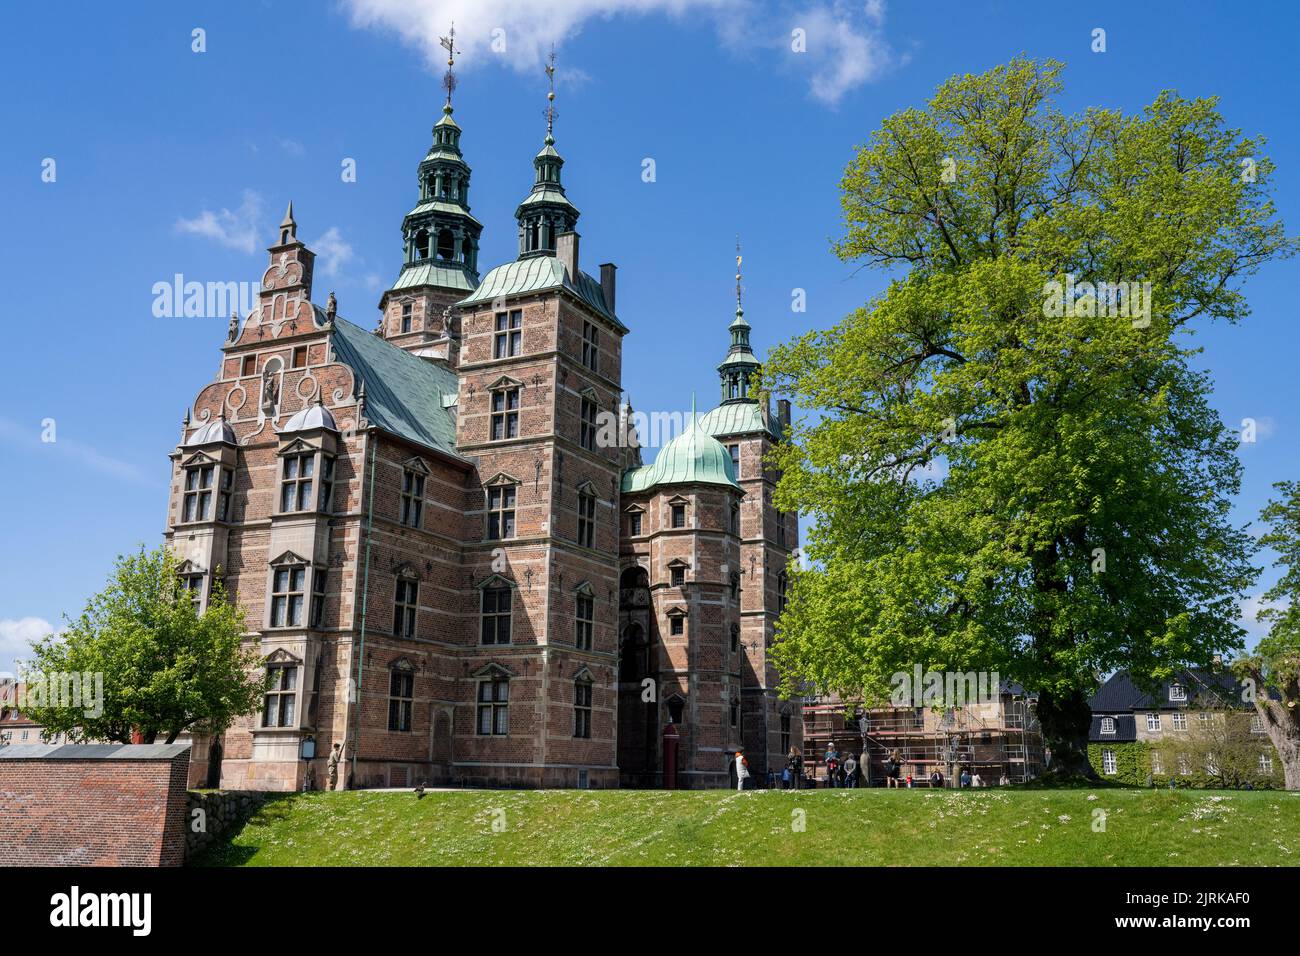 Rosenborg Royal Castle in Flourishing Kings Garden during Summertime Stock Photo